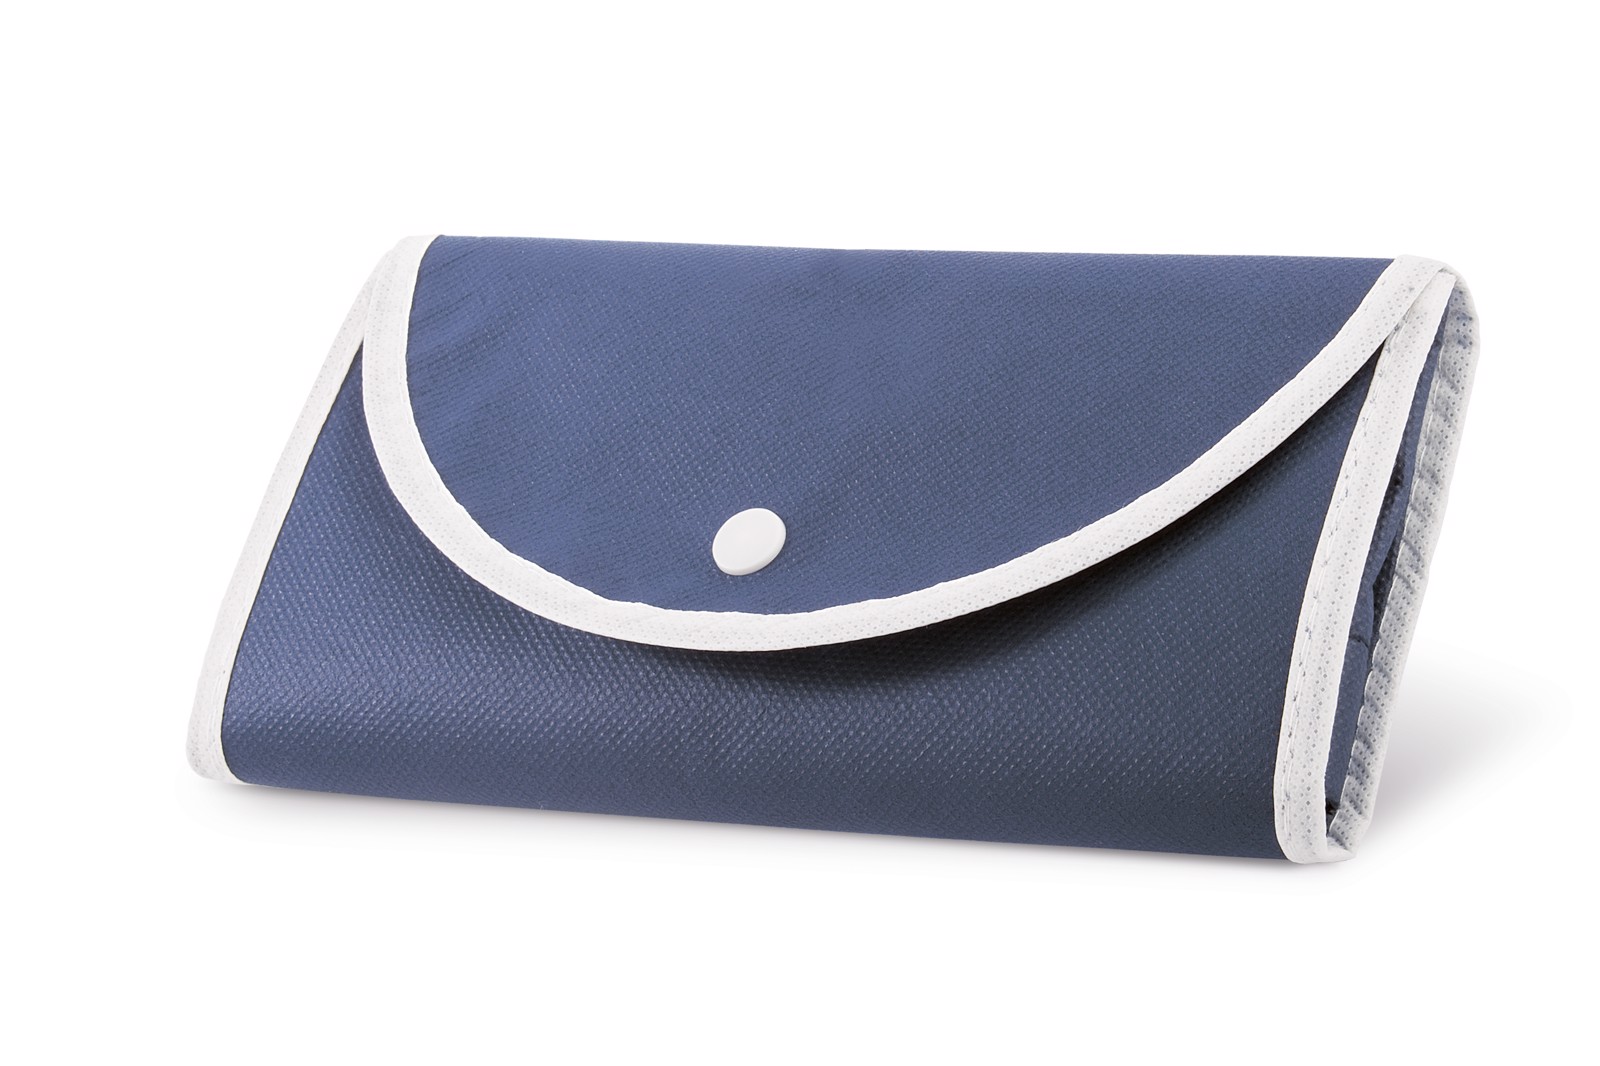 ARLON. Foldable bag - Blue